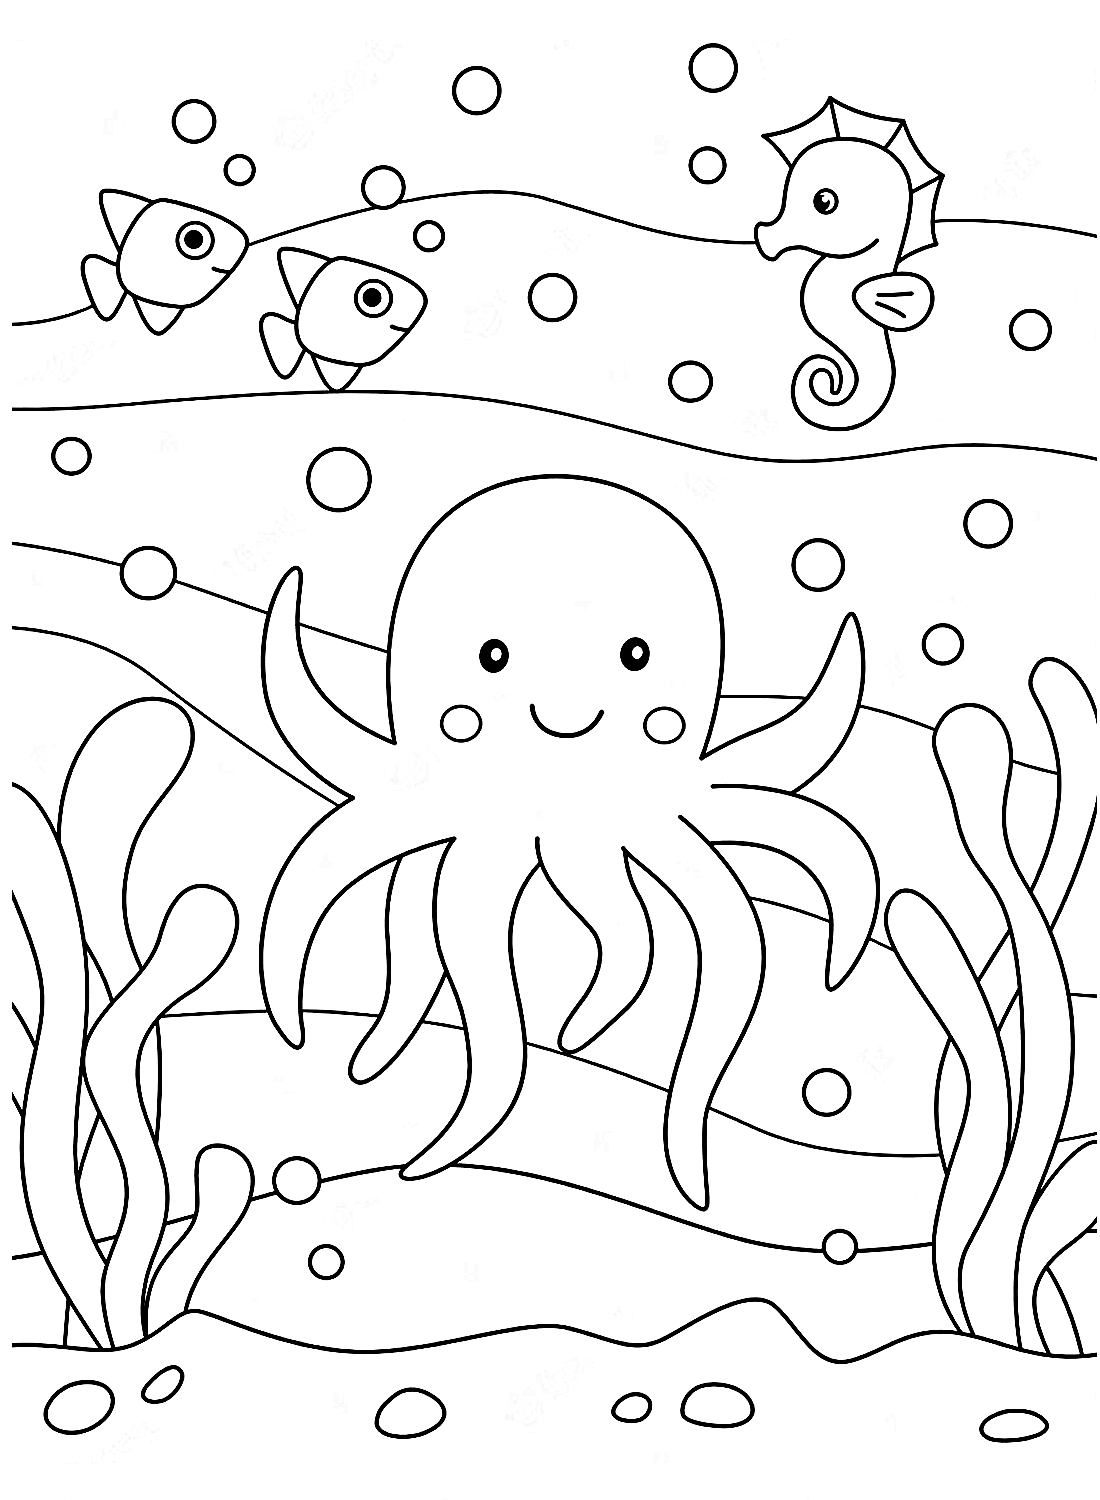 La medusa e l'oceano da colorare